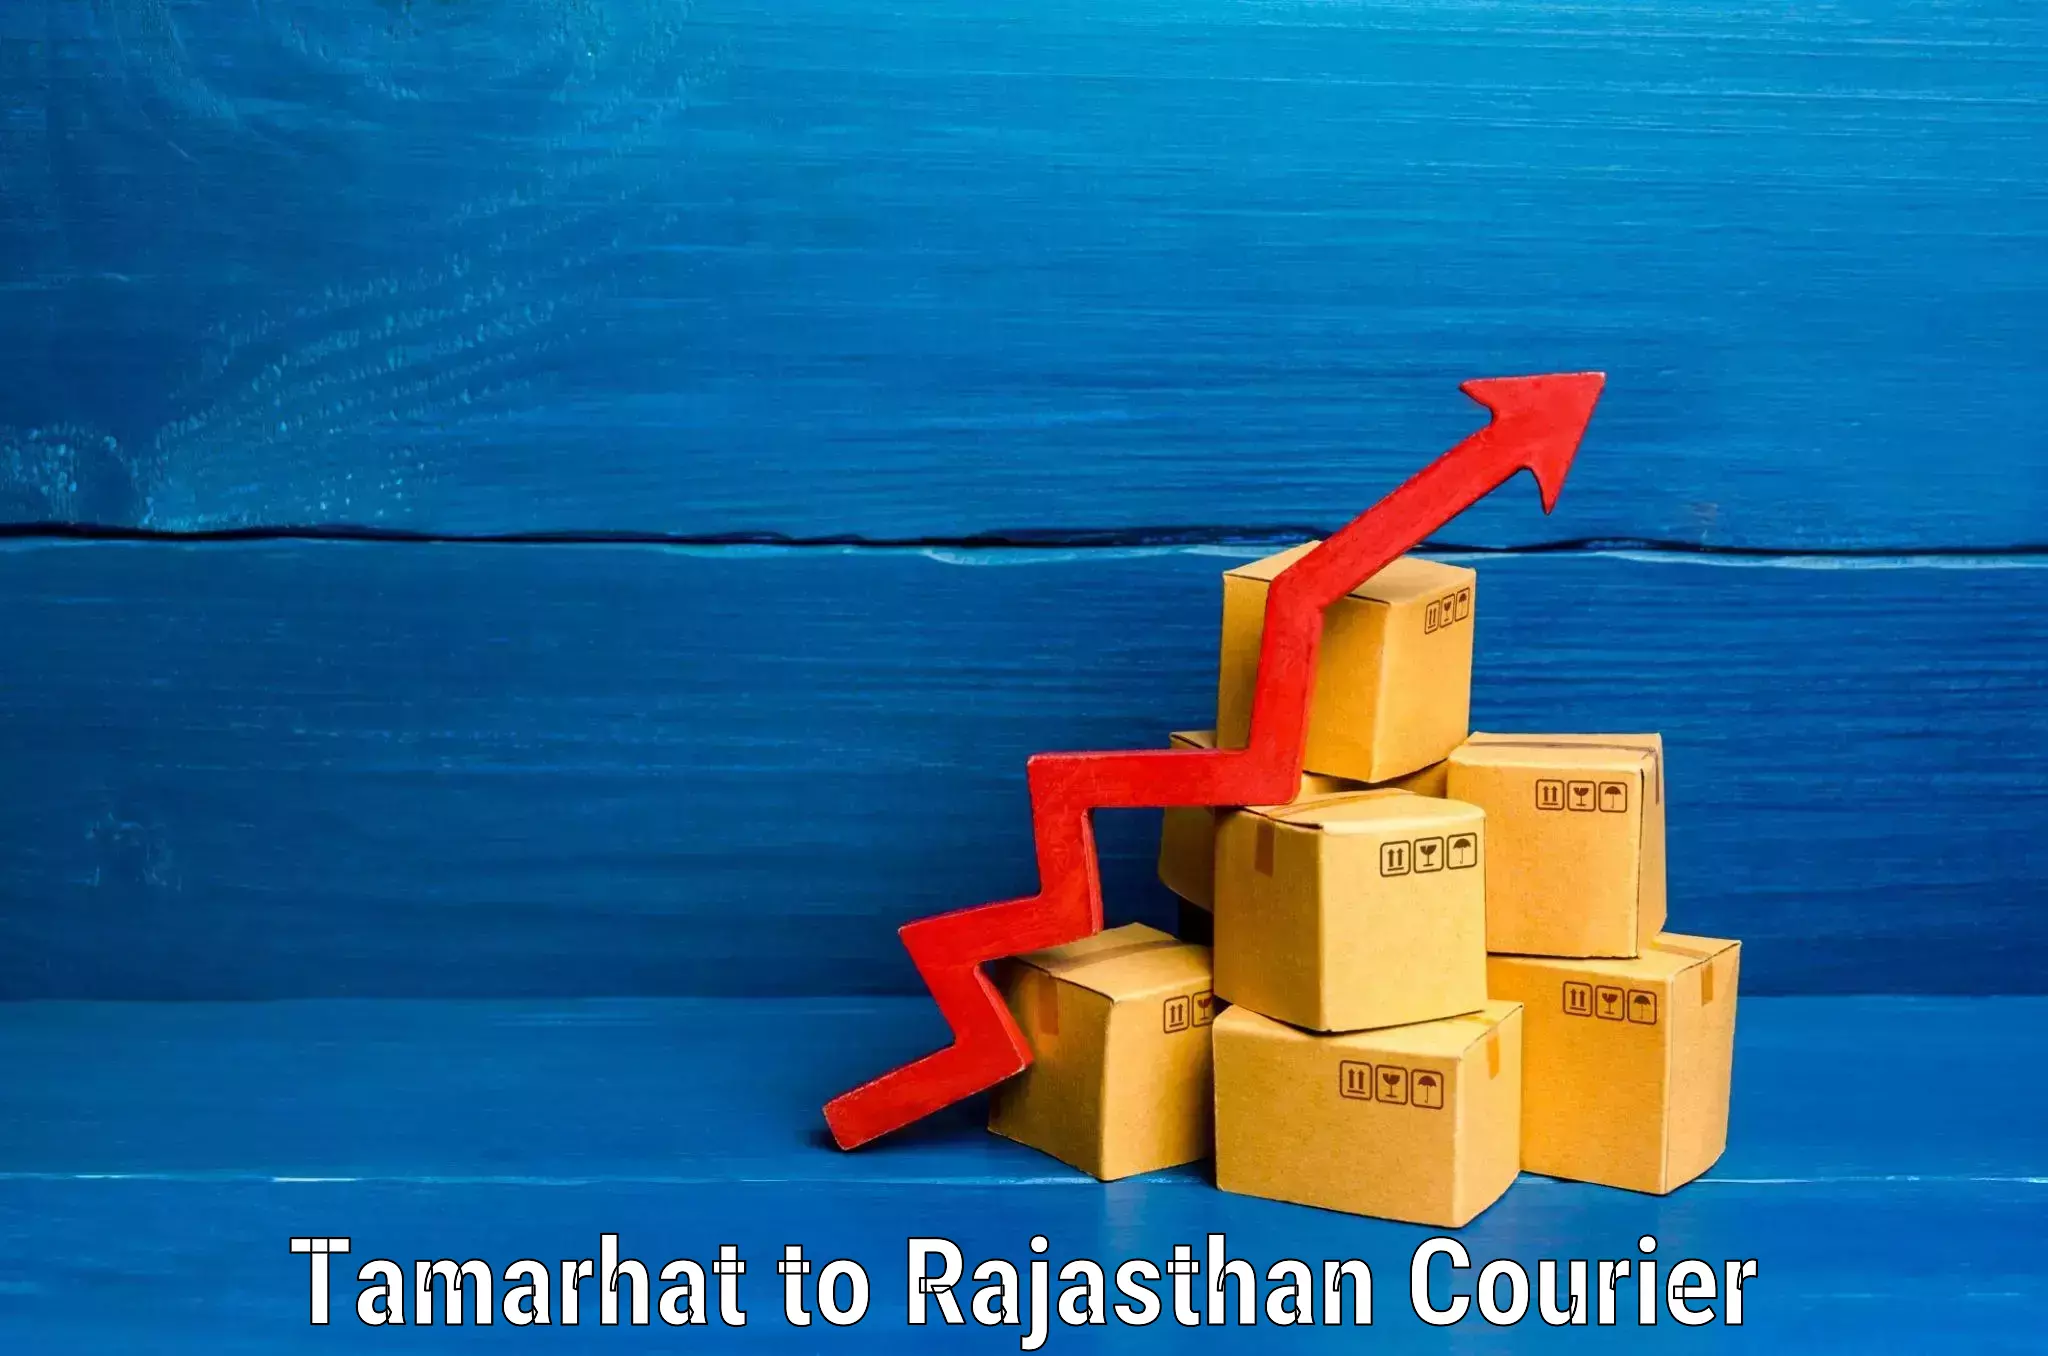 Baggage shipping service Tamarhat to Rajasthan